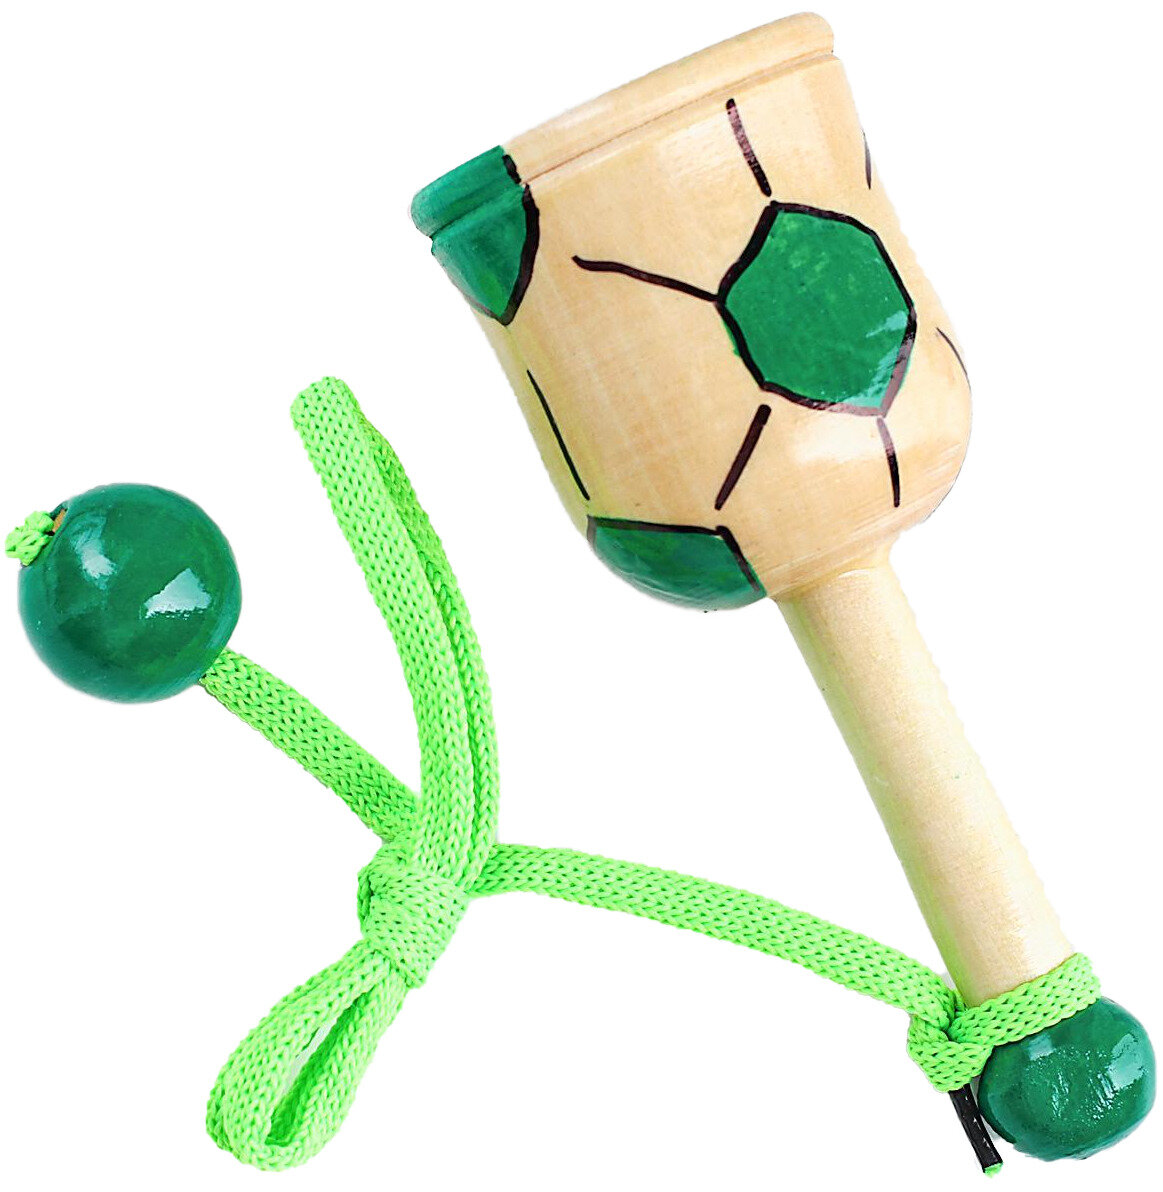 Деревянная игрушка "Поймай мяч 2" футбол, подвижная детская игра на развитие ловкости и координации движений